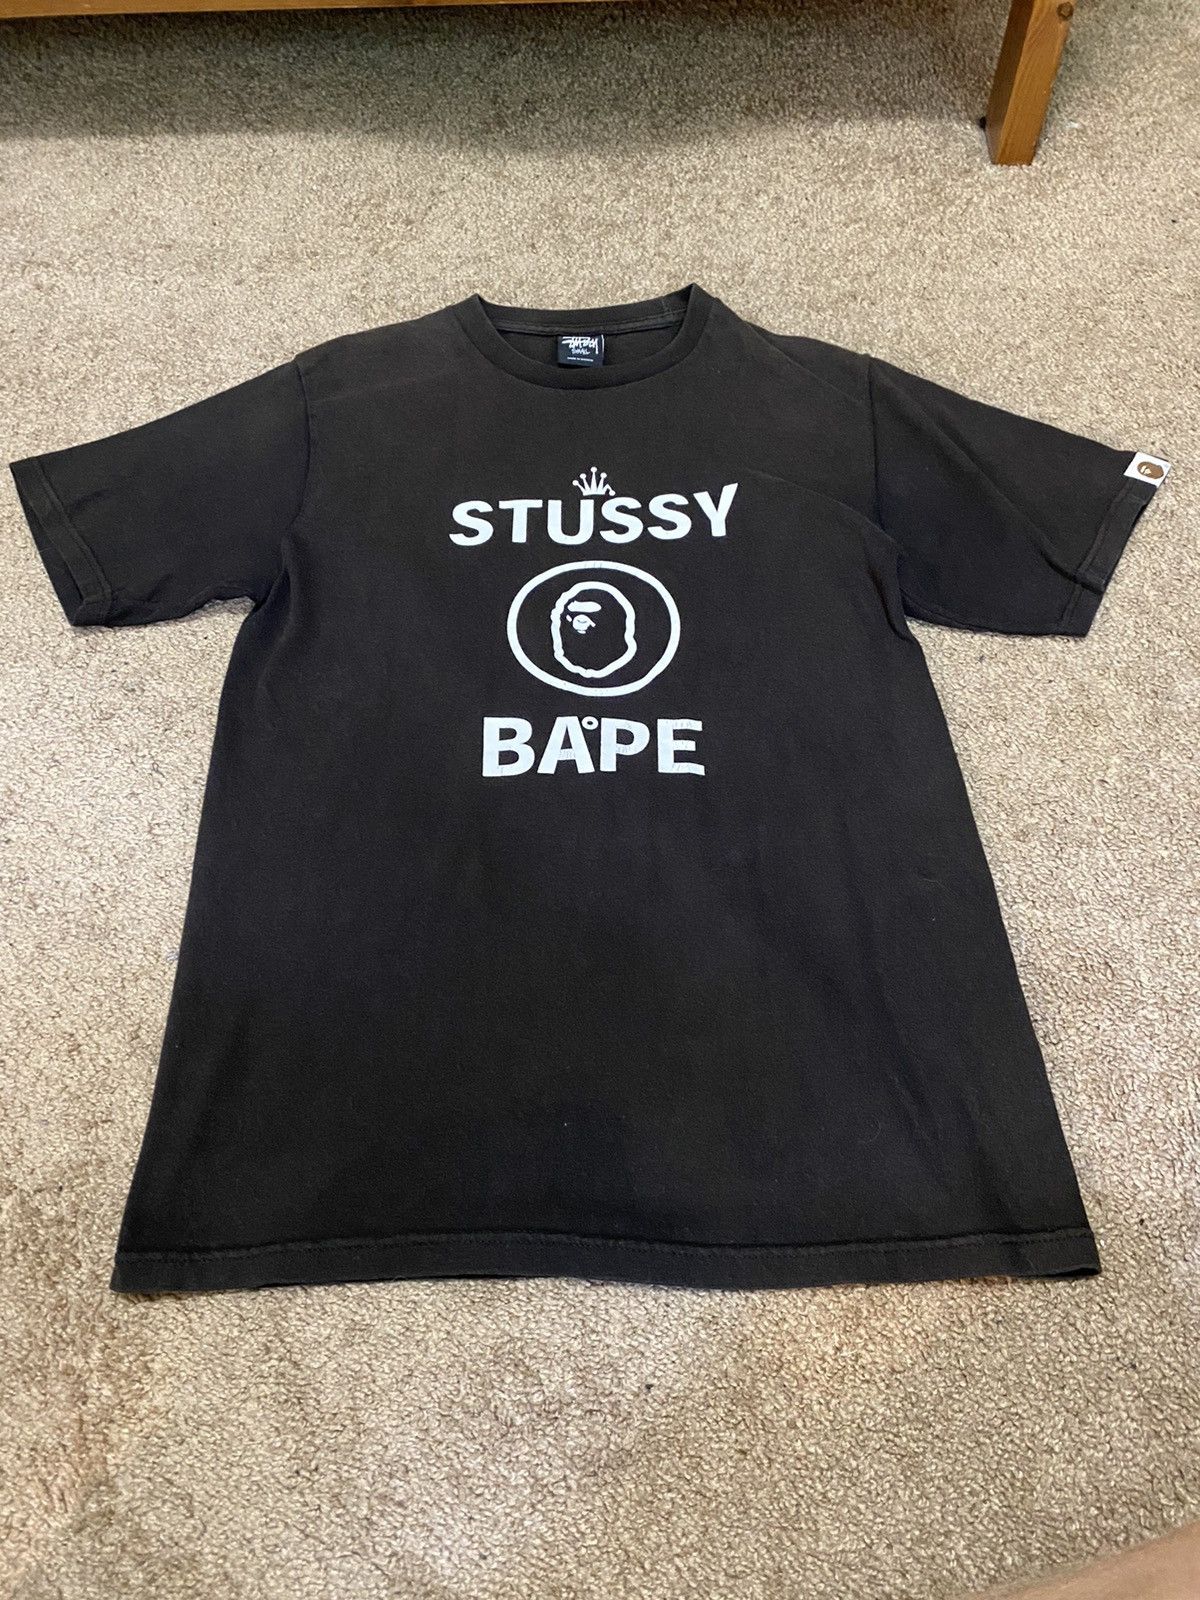 Bape Stussy X Bape First Collab T Shirt Men sz S Vintage 2010 Size US S / EU 44-46 / 1 - 1 Preview